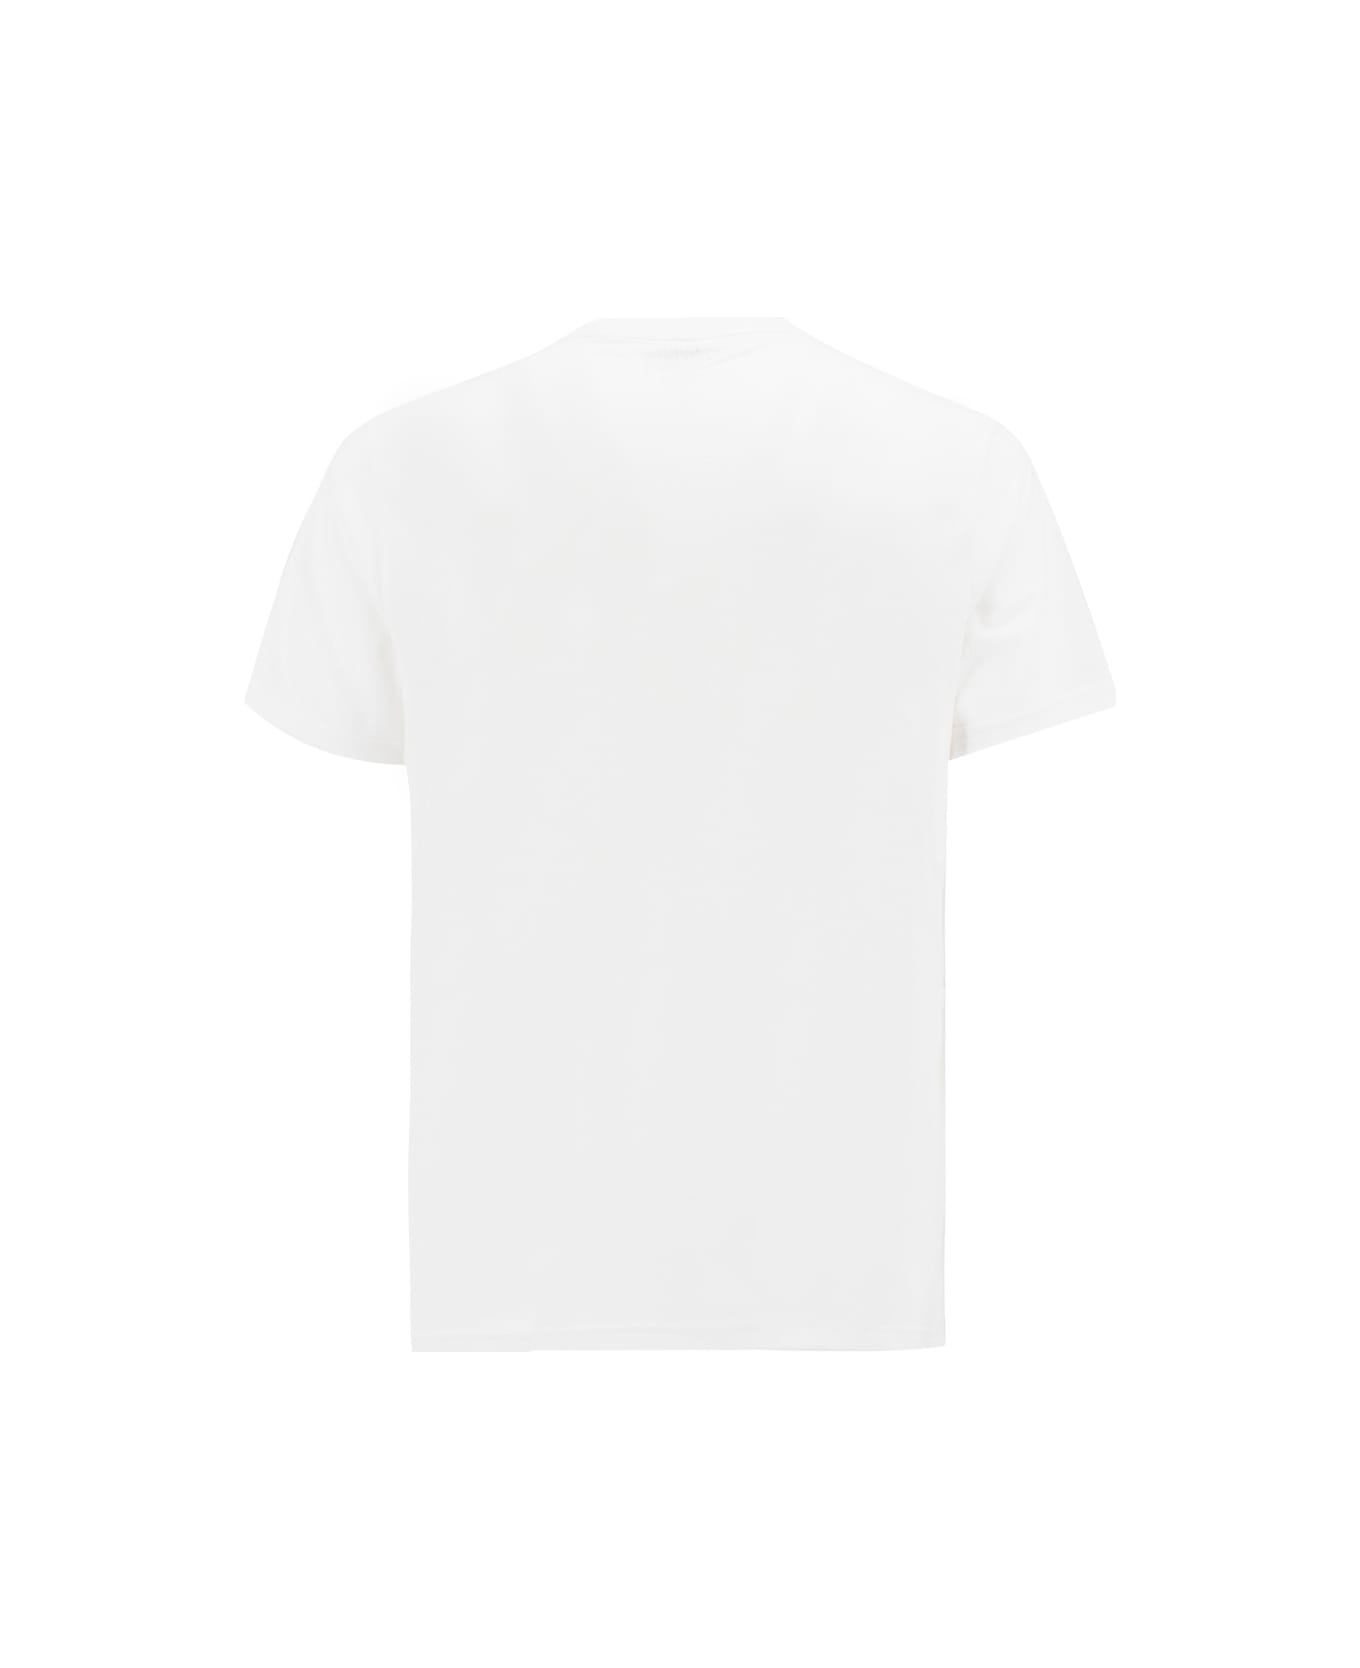 Aspesi White T-shirt With Print - WHITE シャツ